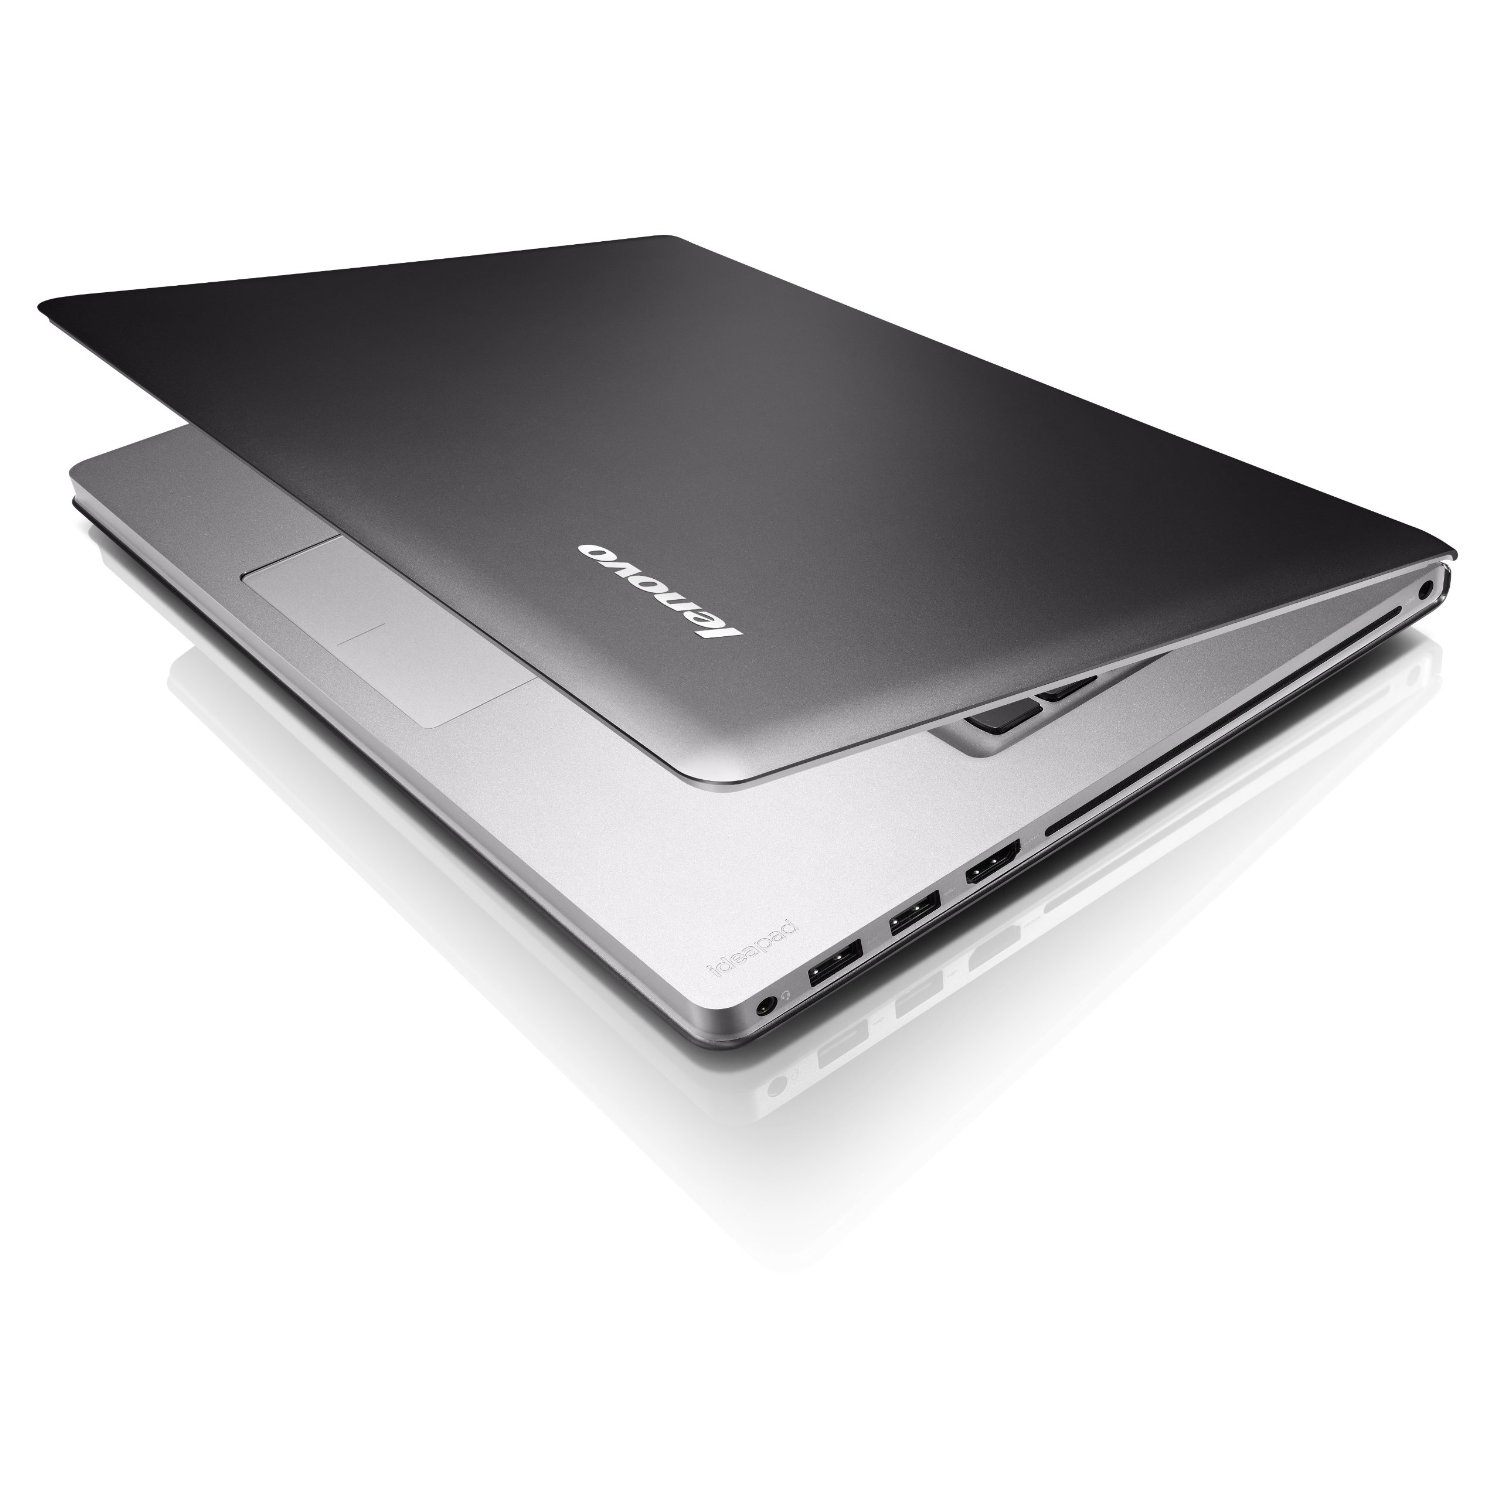 Lenovo_IdeaPad_U400